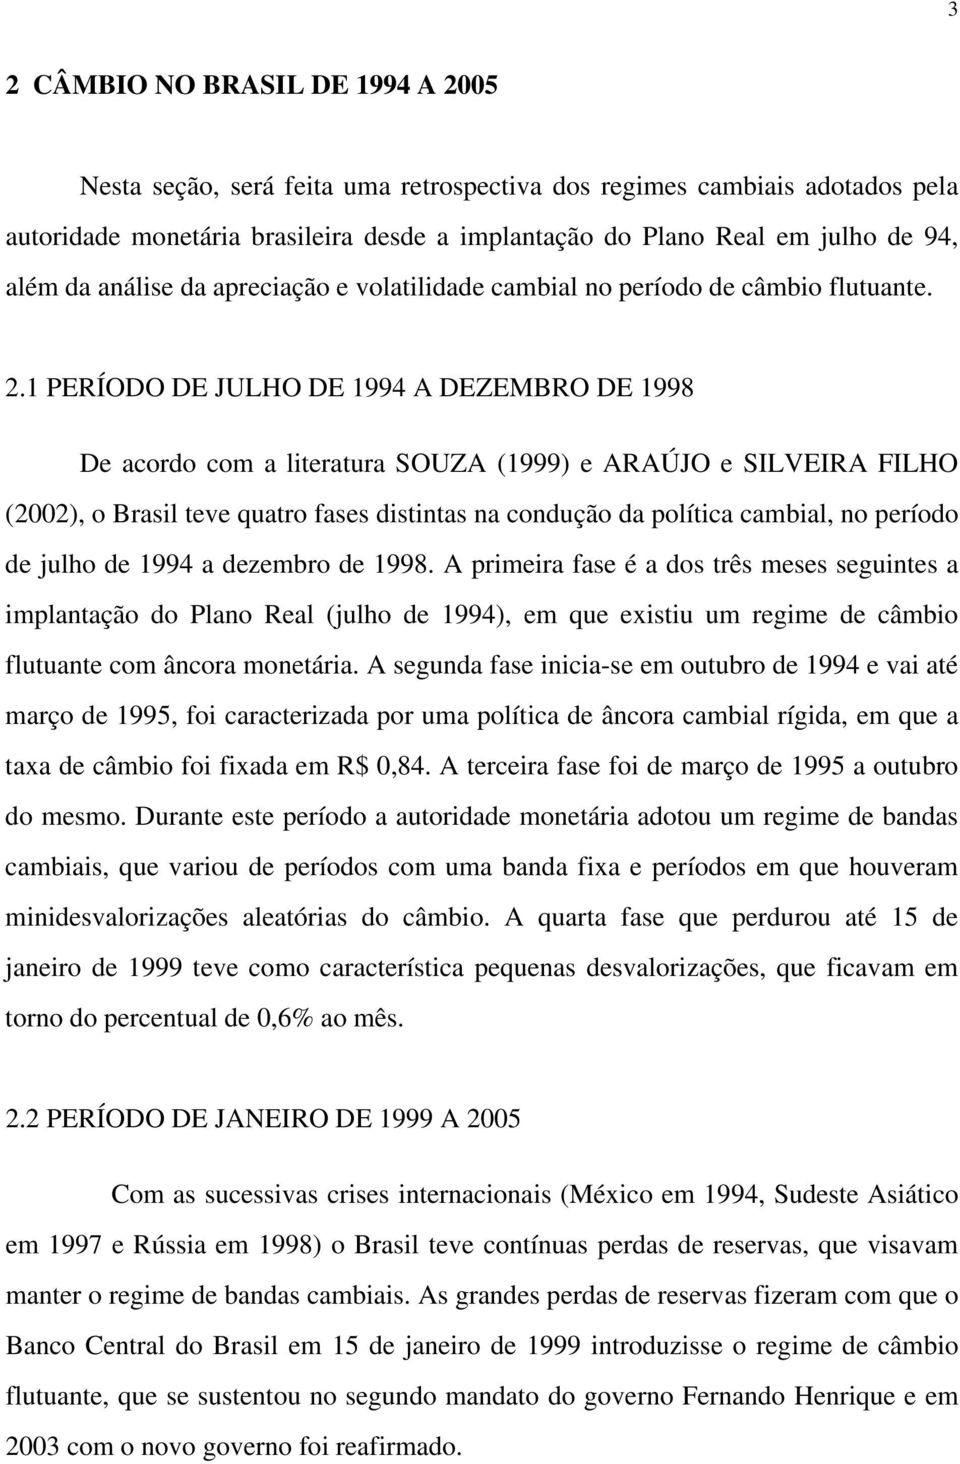 1 PERÍODO DE JULHO DE 1994 A DEZEMBRO DE 1998 De acordo com a literatura SOUZA (1999) e ARAÚJO e SILVEIRA FILHO (2002), o Brasil teve quatro fases distintas na condução da política cambial, no